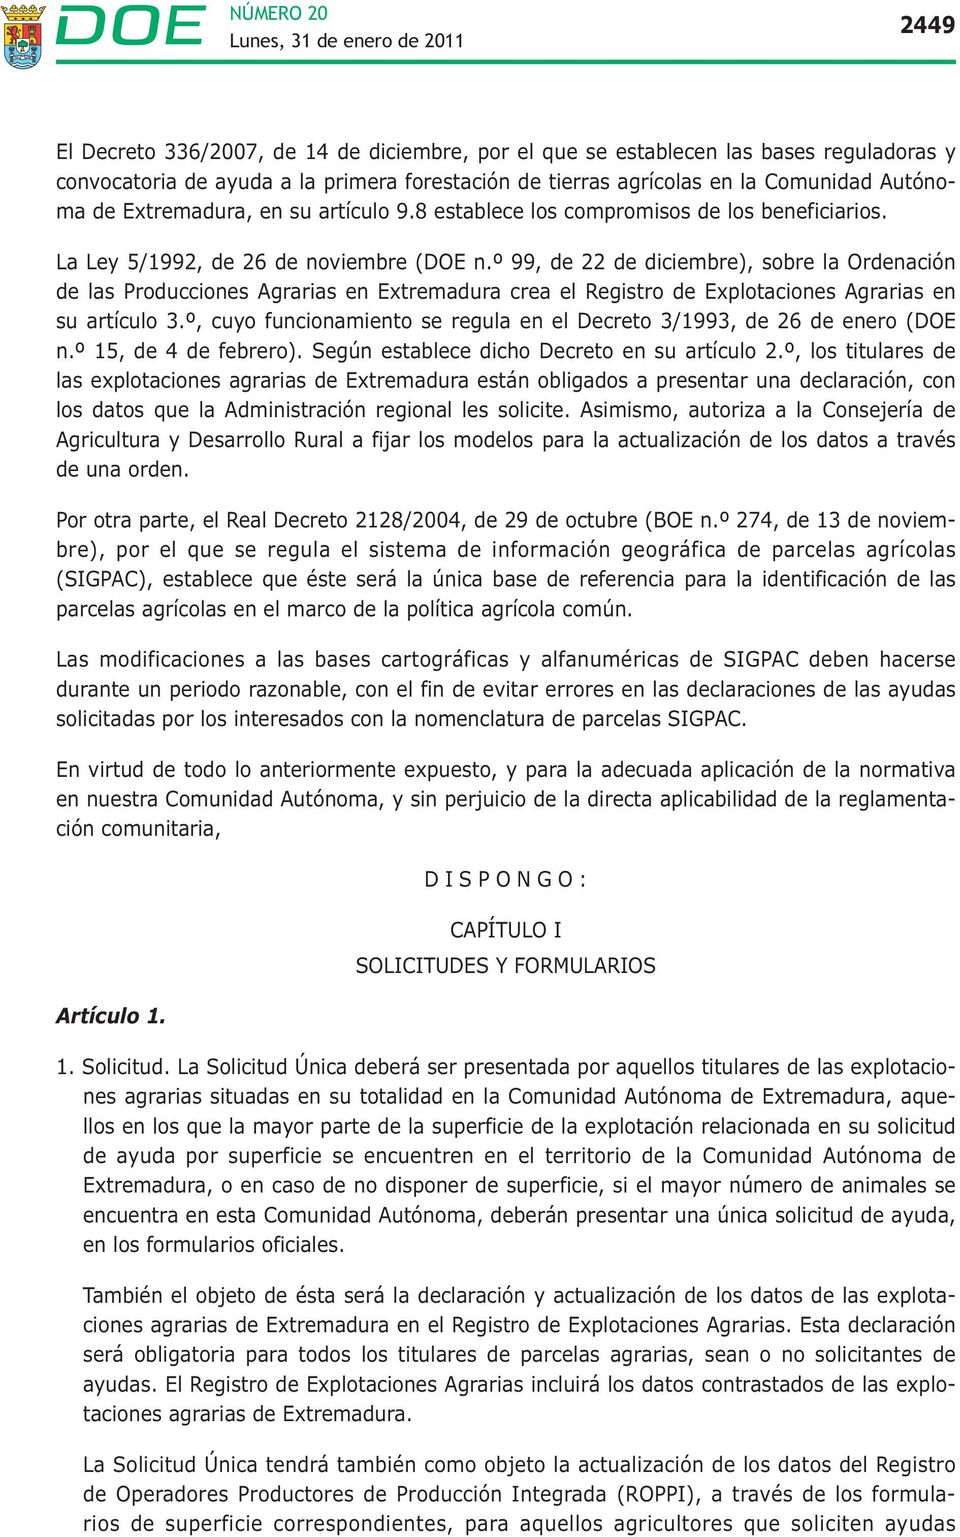 º 99, de 22 de diciembre), sobre la Ordenación de las Producciones Agrarias en Extremadura crea el Registro de Explotaciones Agrarias en su artículo 3.